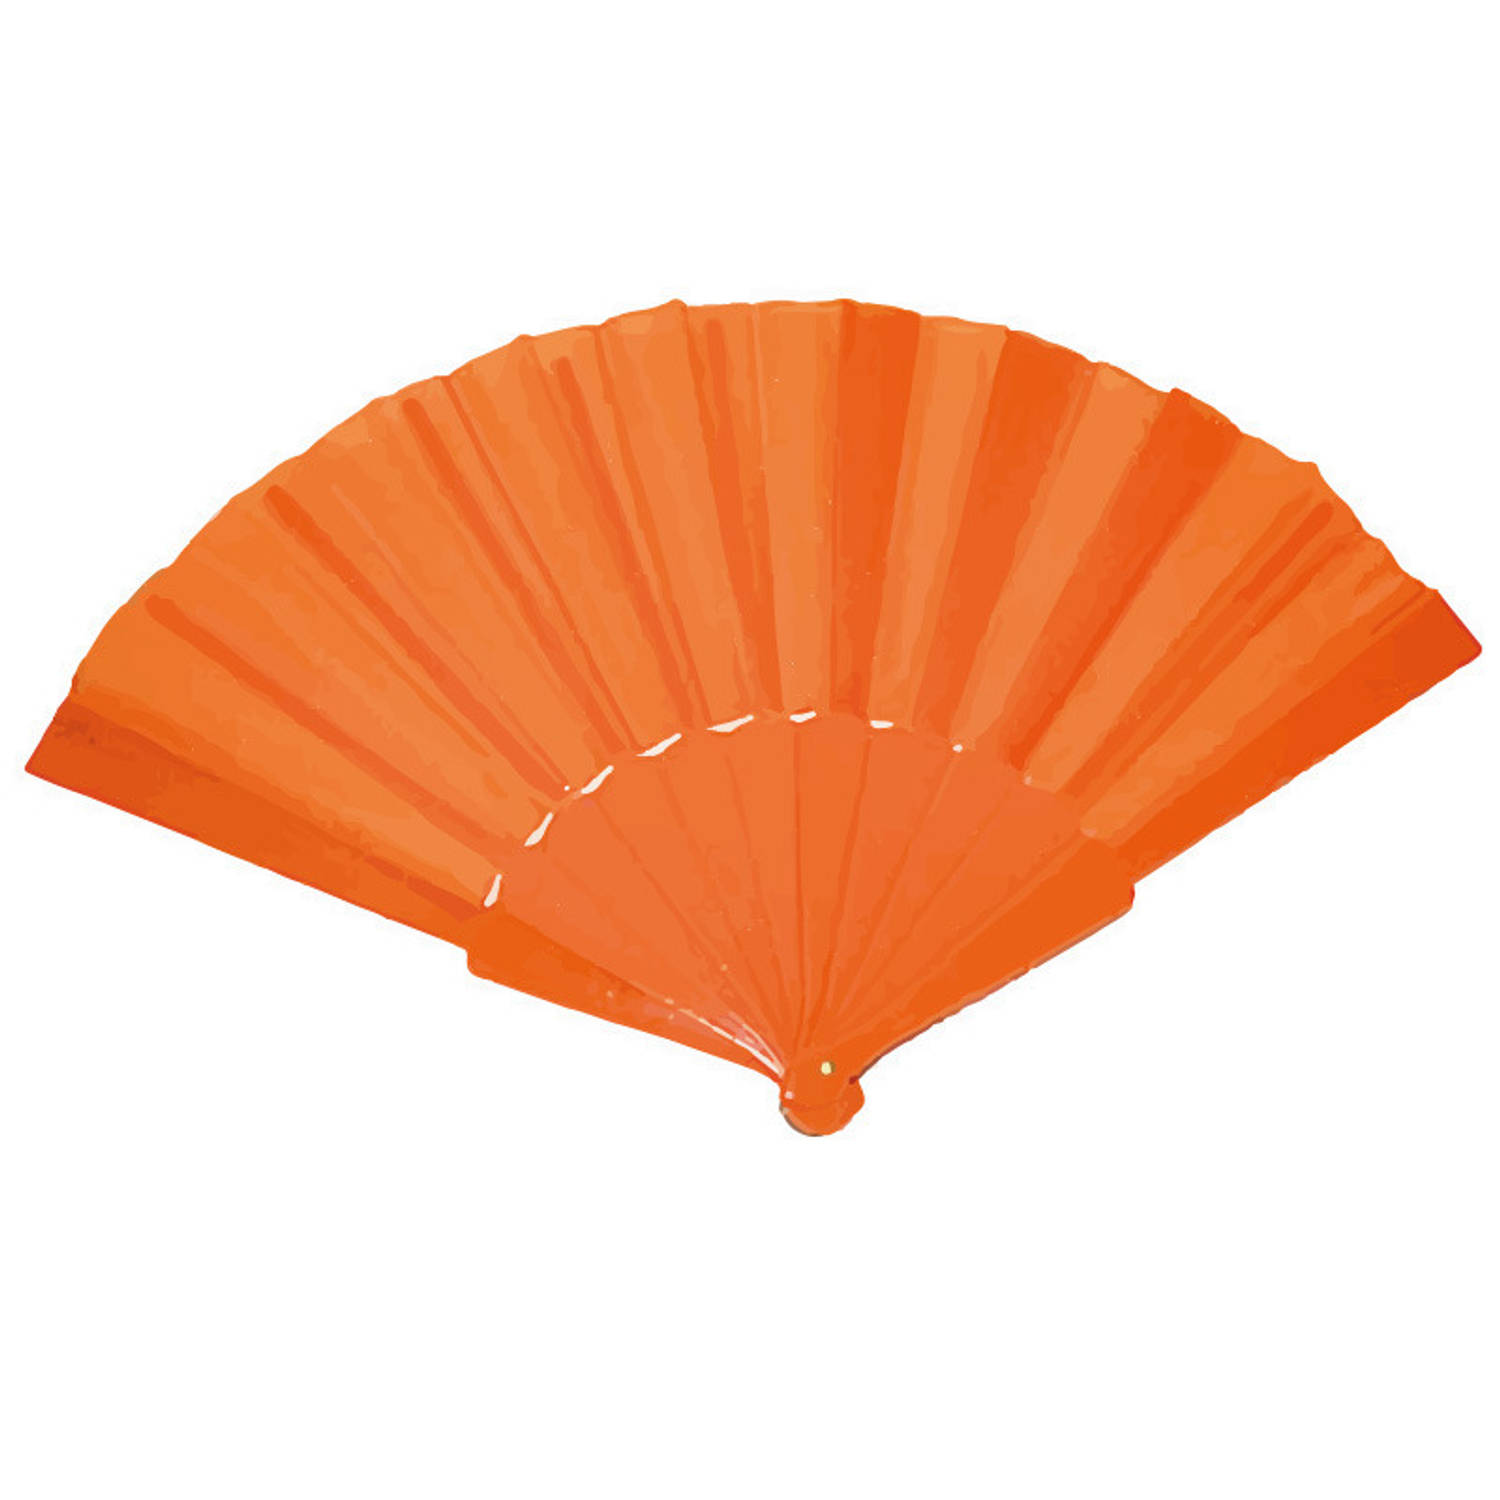 Handwaaier/Spaanse waaier oranje - polyester - Verkoeling in de zomer